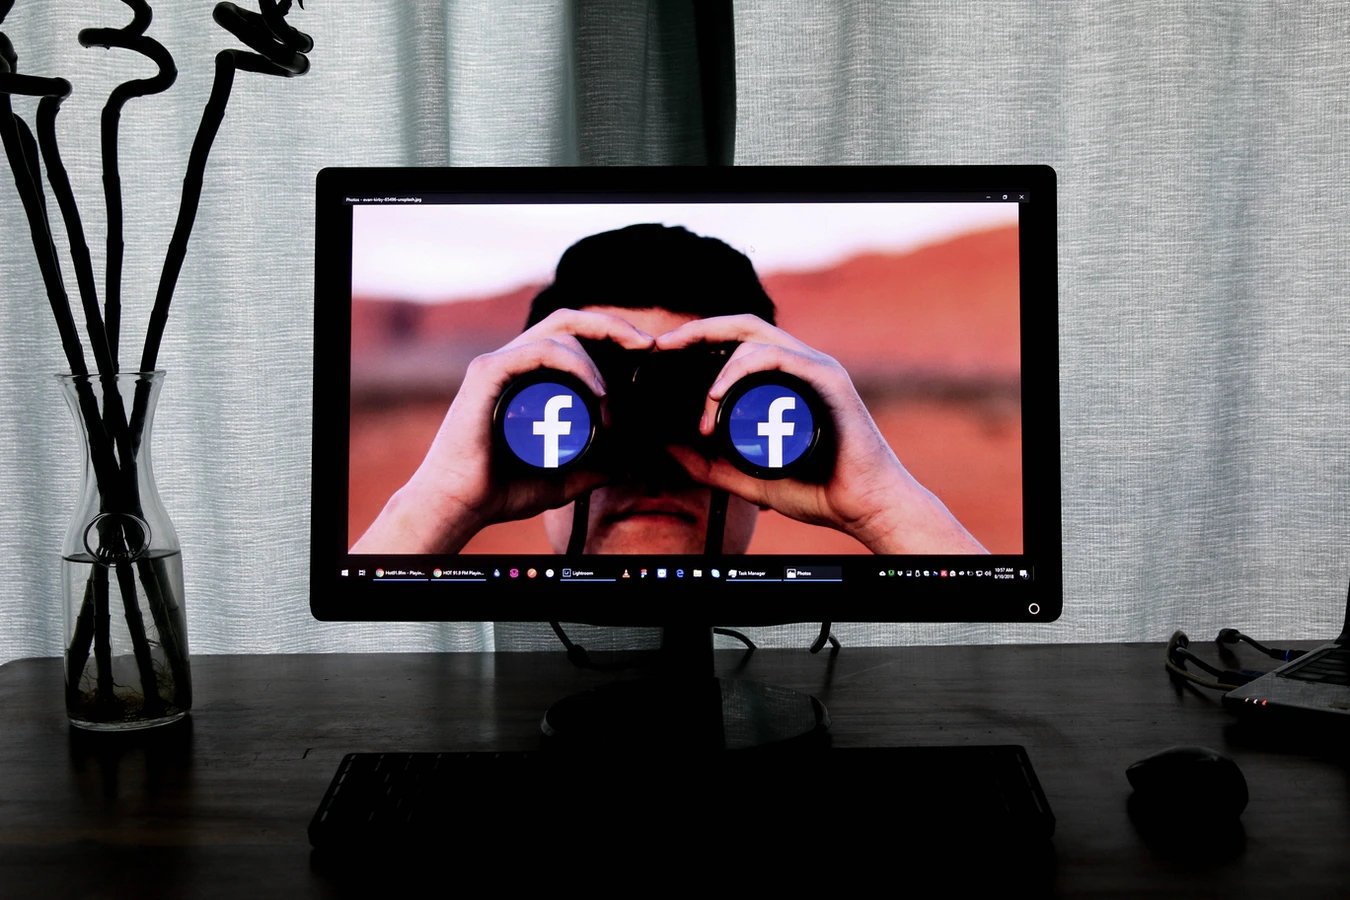 Facebook a espiar no PC